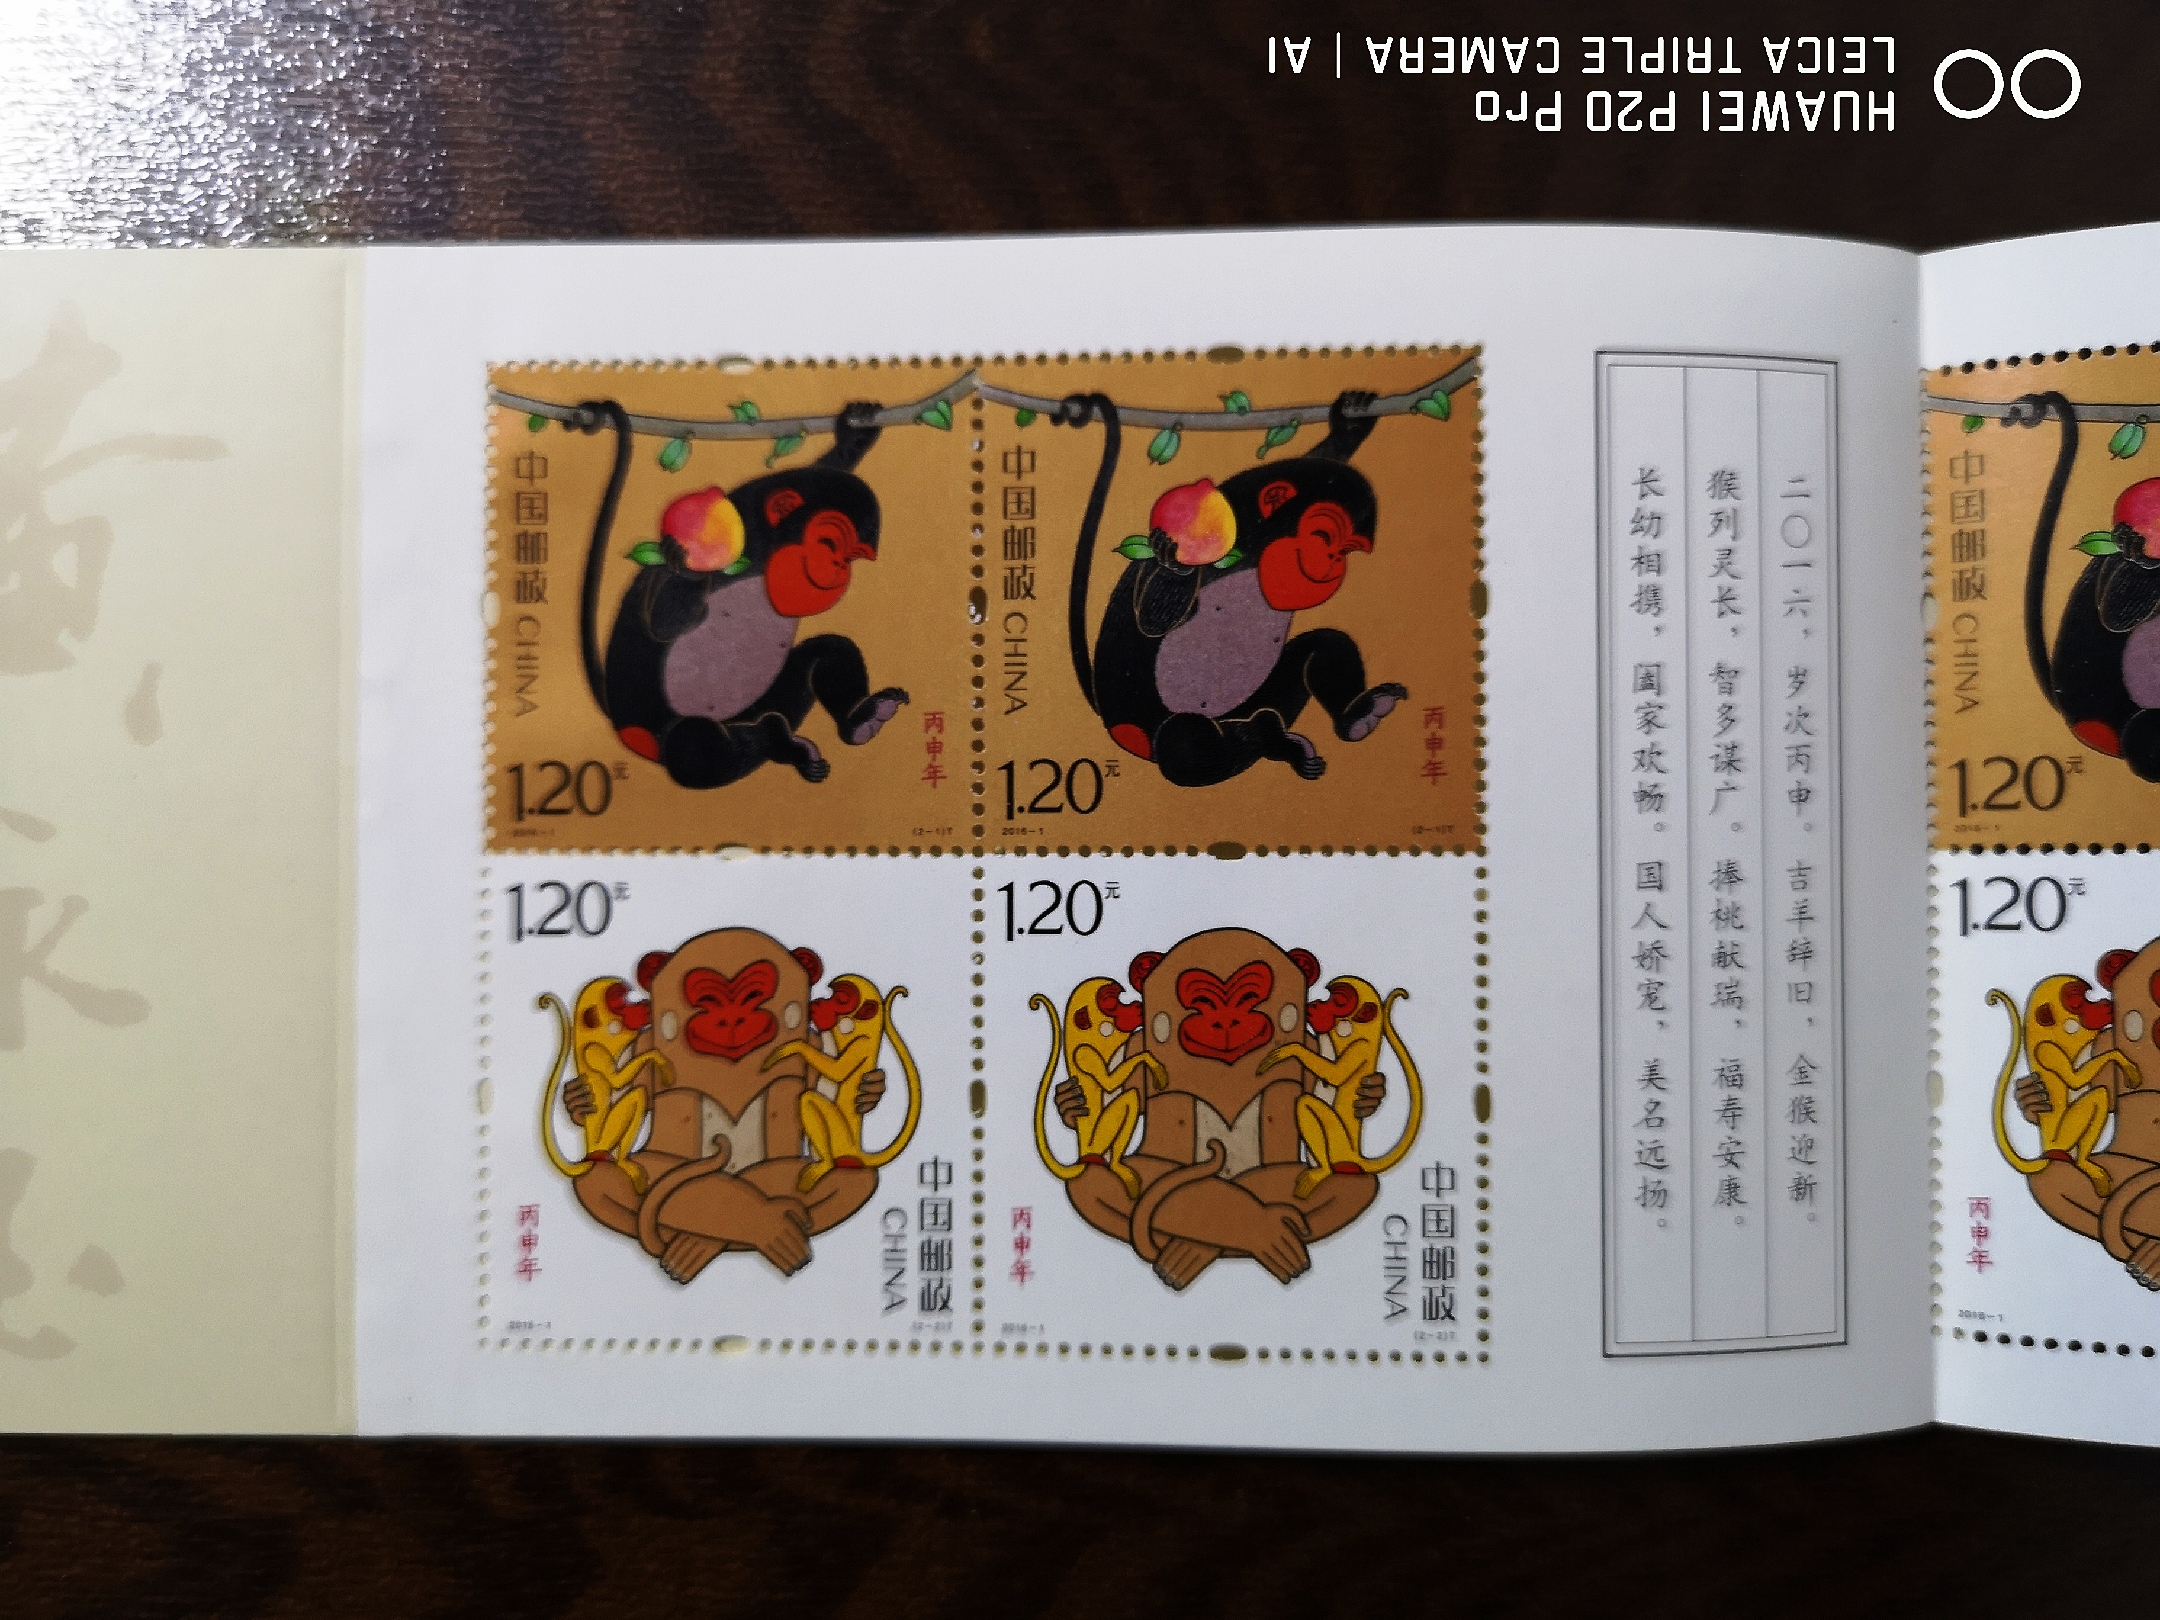 2016年猴年邮票猴小本票全新品真假_图片_价格_评级